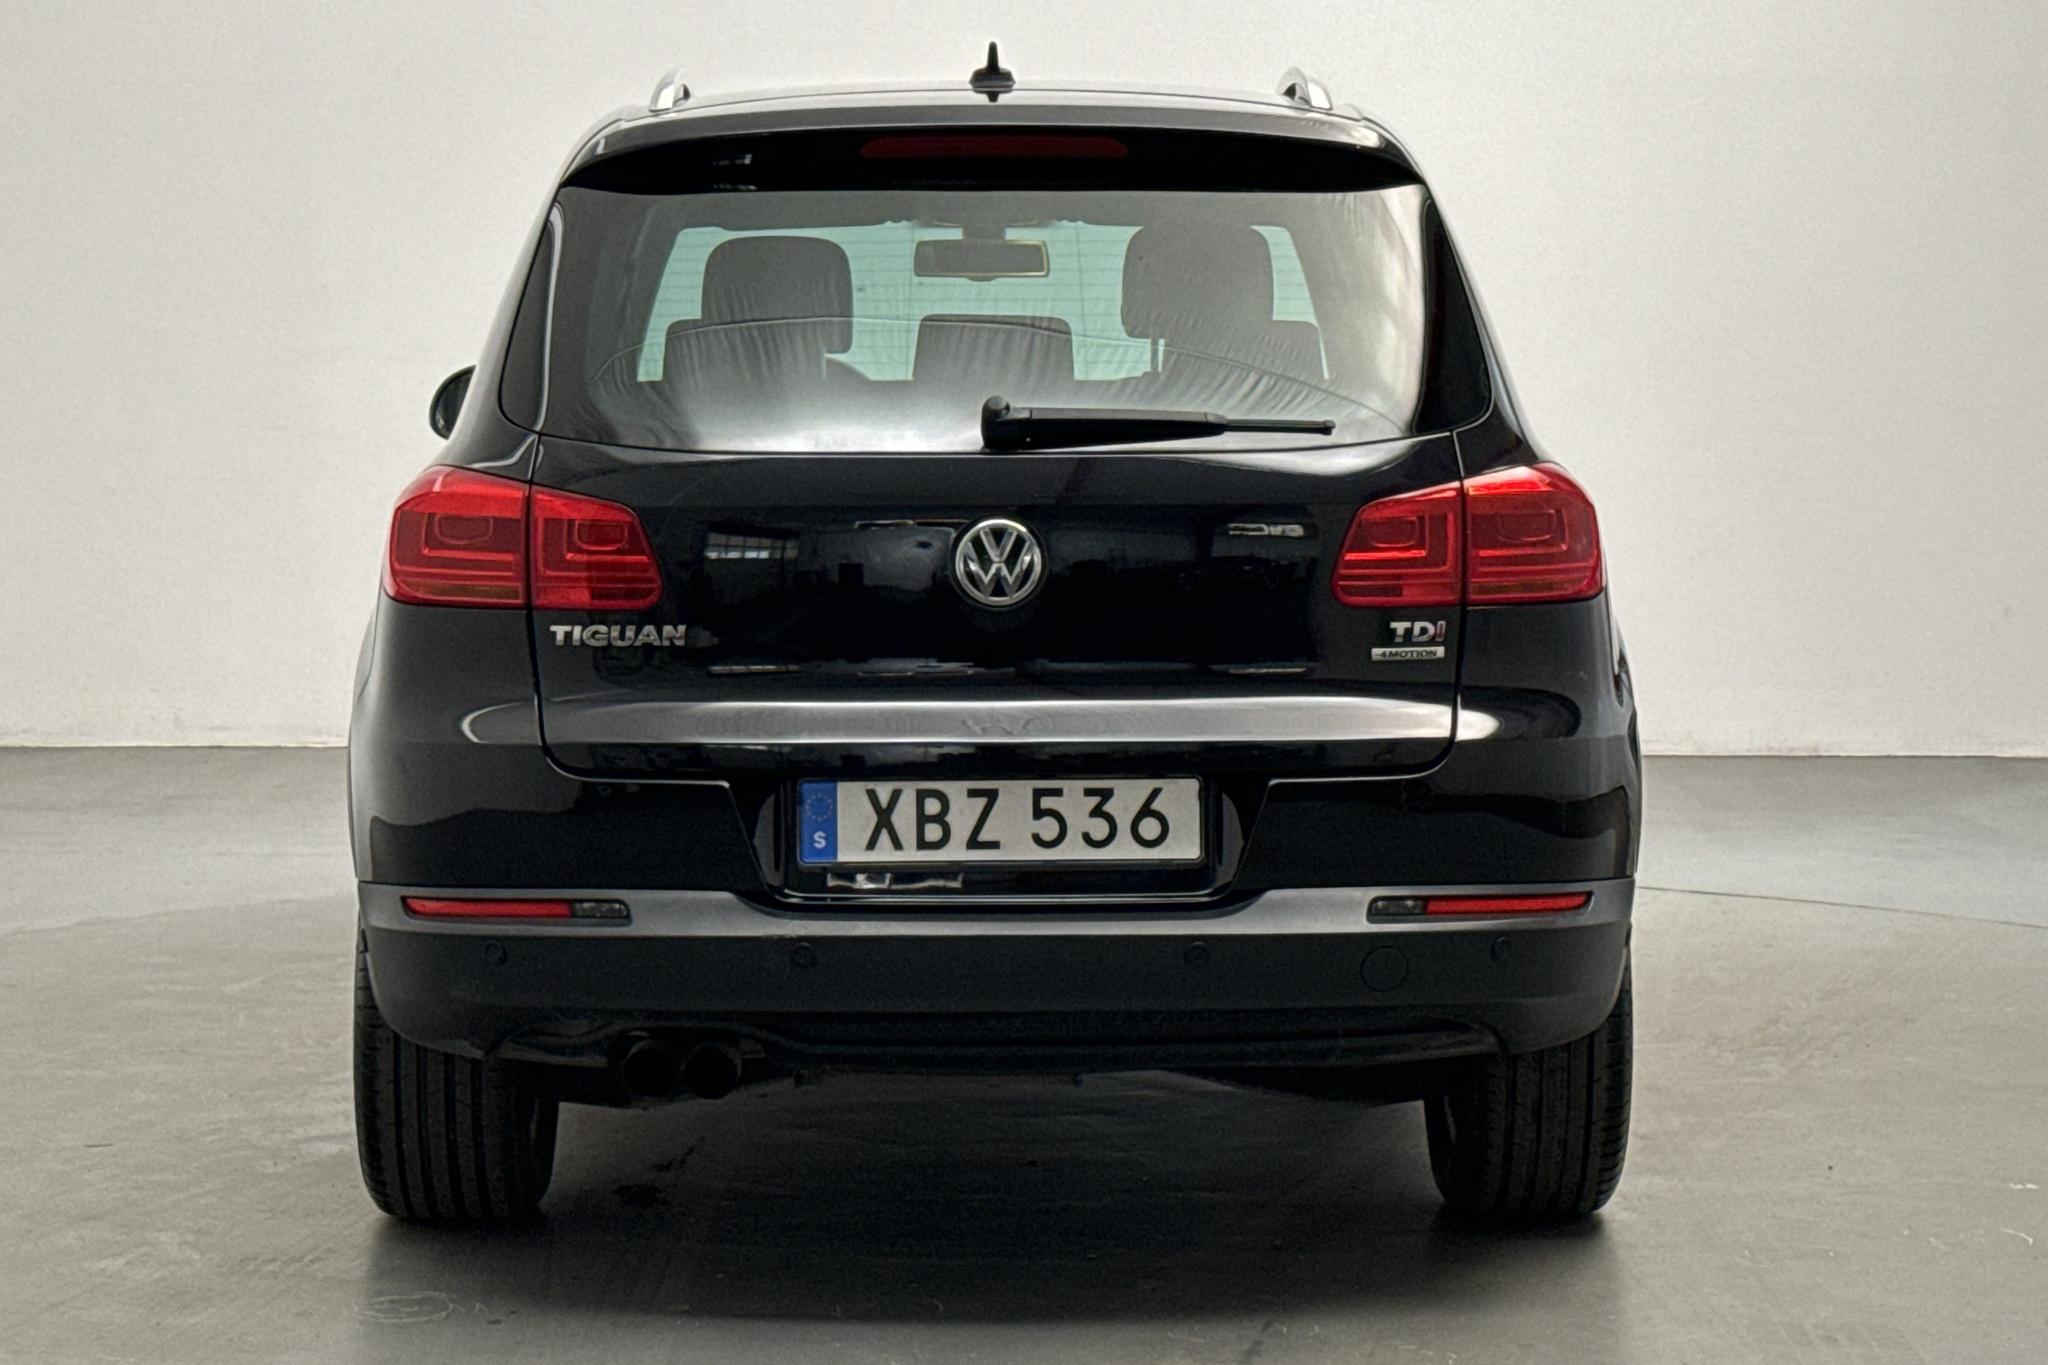 VW Tiguan 2.0 TDI 4 Motion (134hk) - 160 970 km - Automatic - black - 2012